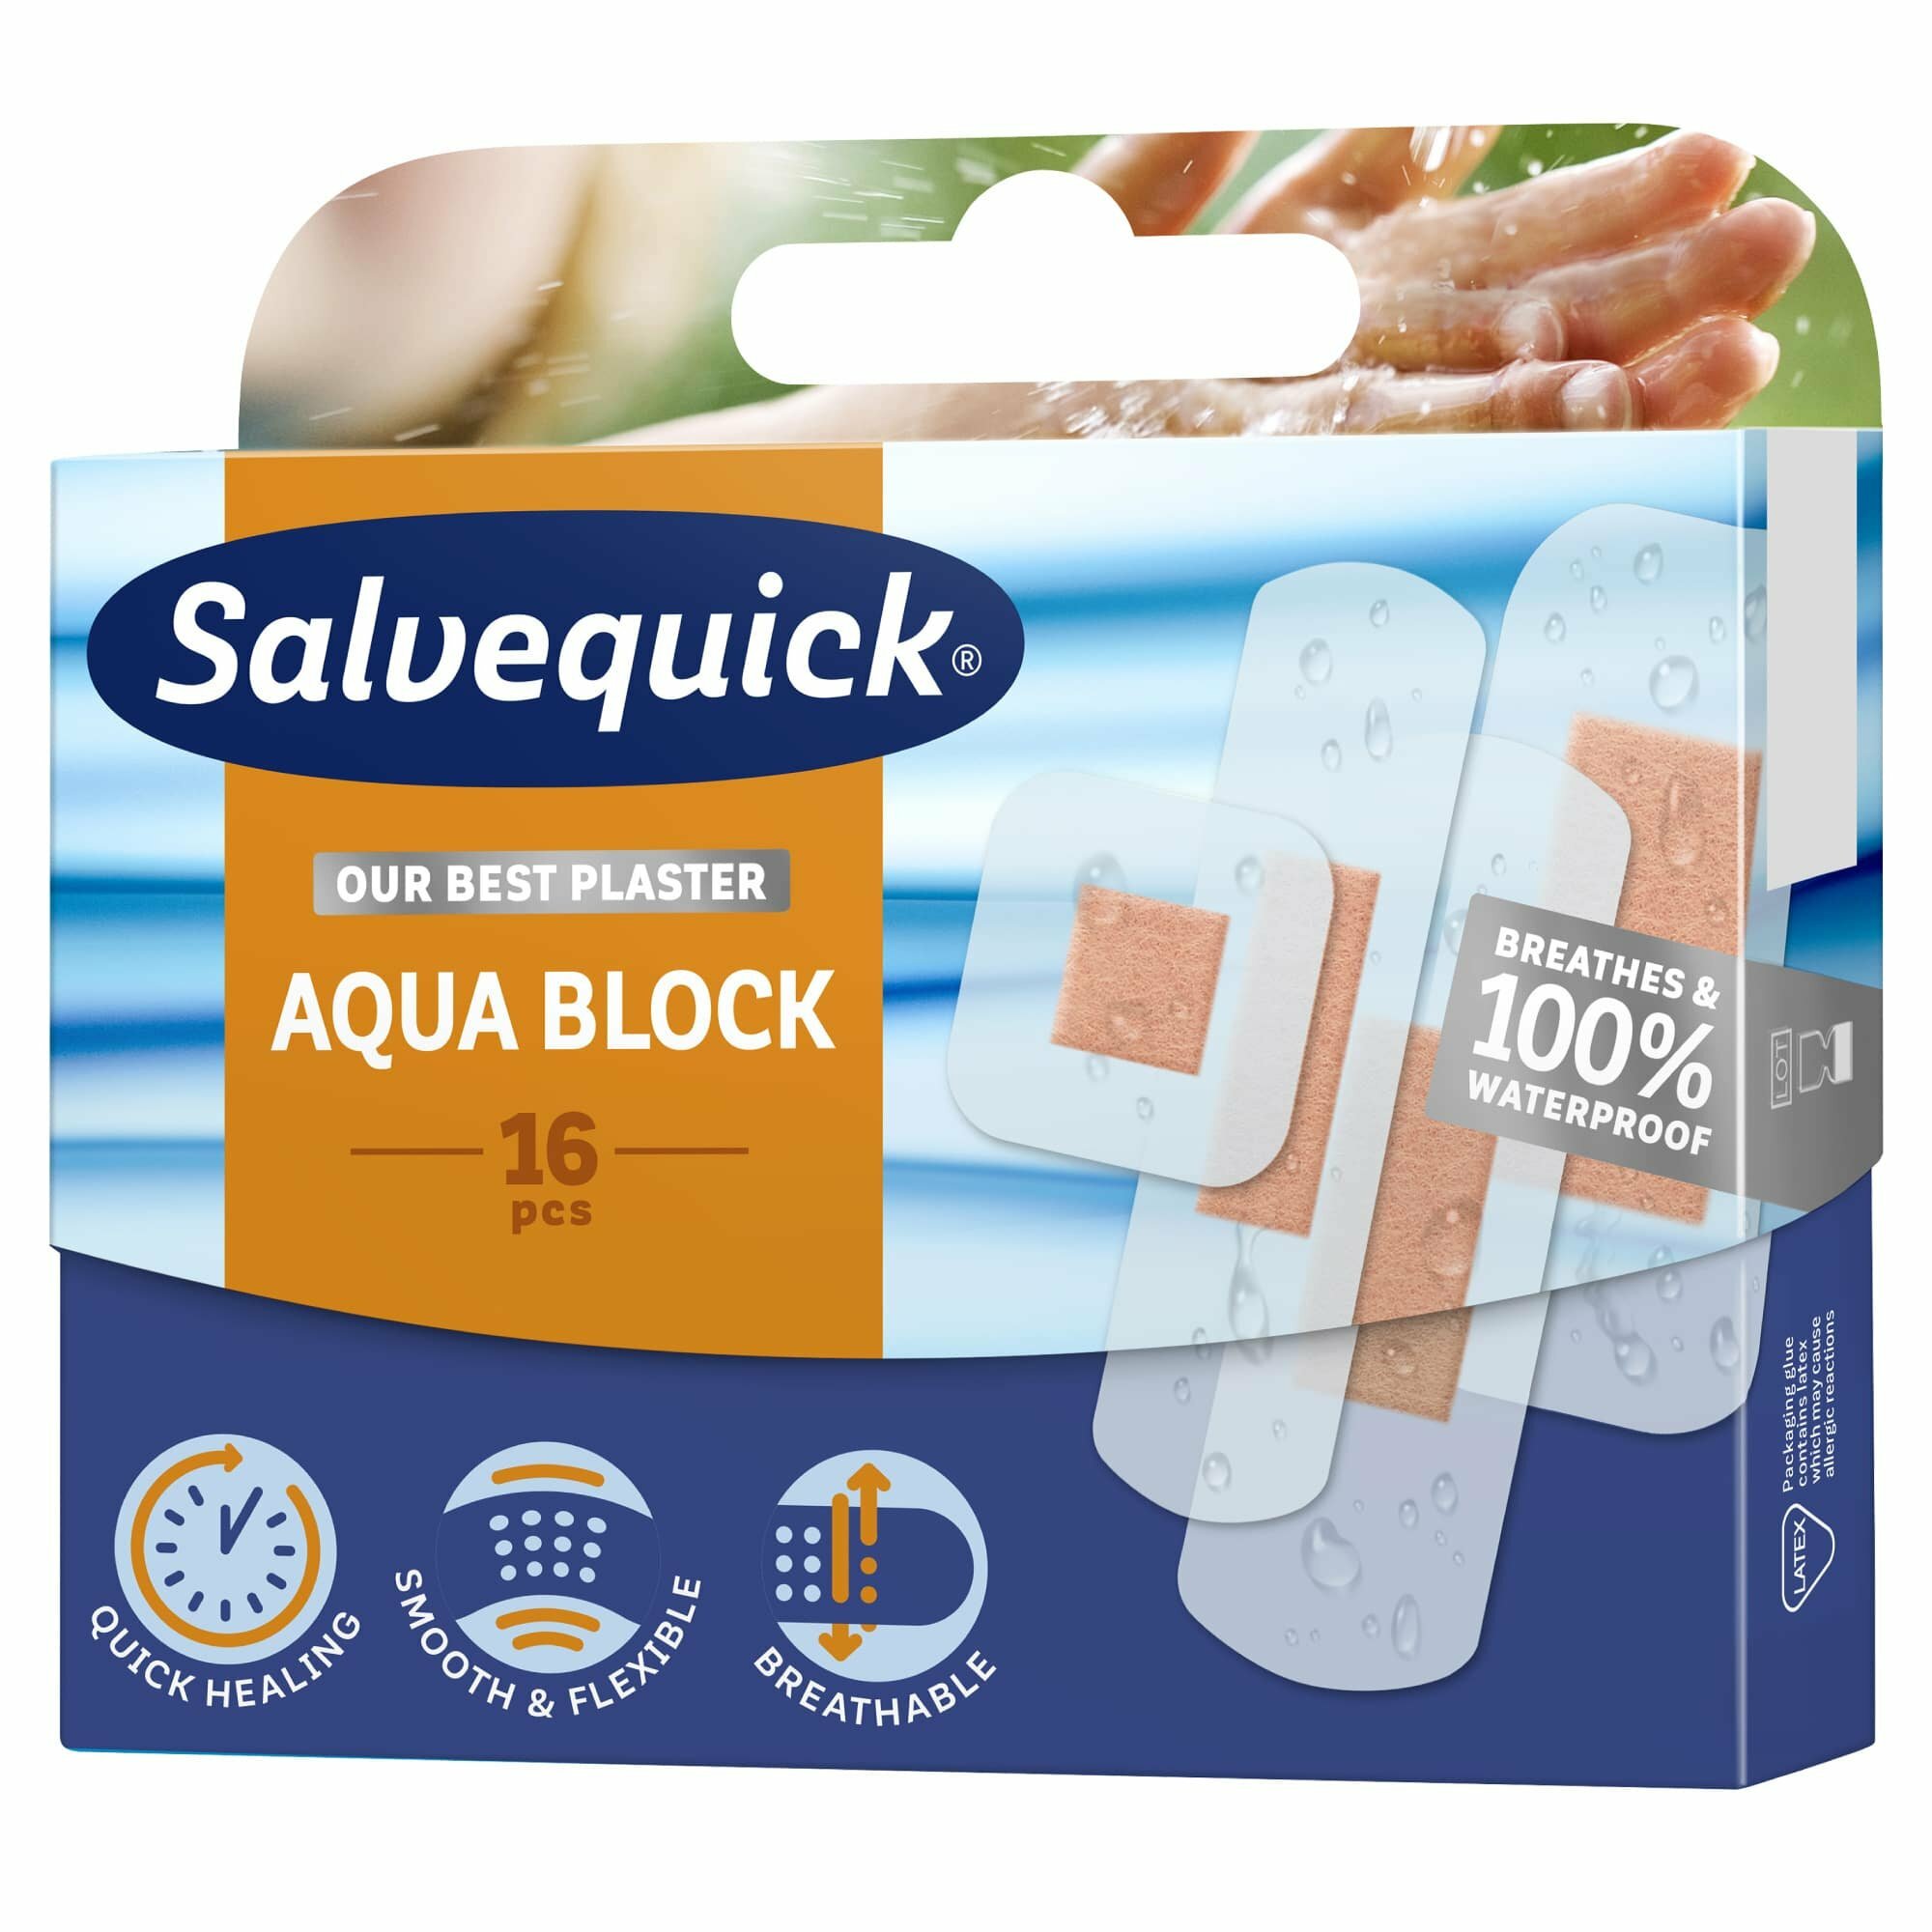 Salvequick Aqua Block Náplasť vodeodolná, sada 16 ks + 12 ks detská + šál zdarma